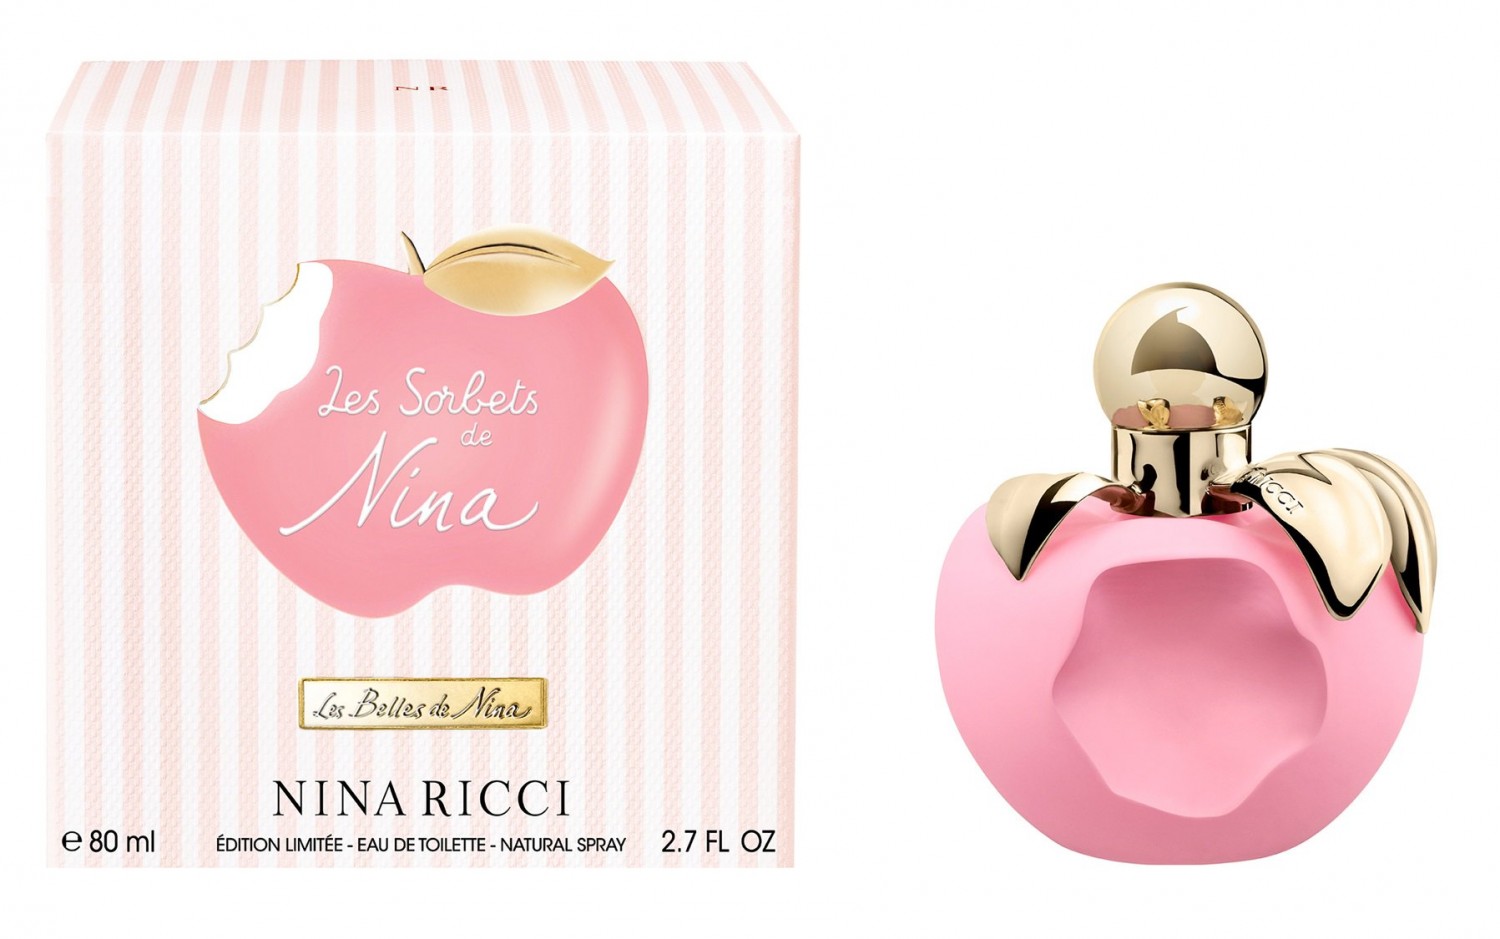 Nina Ricci Les Sorbets Nina, Luna & Bella Perfumes